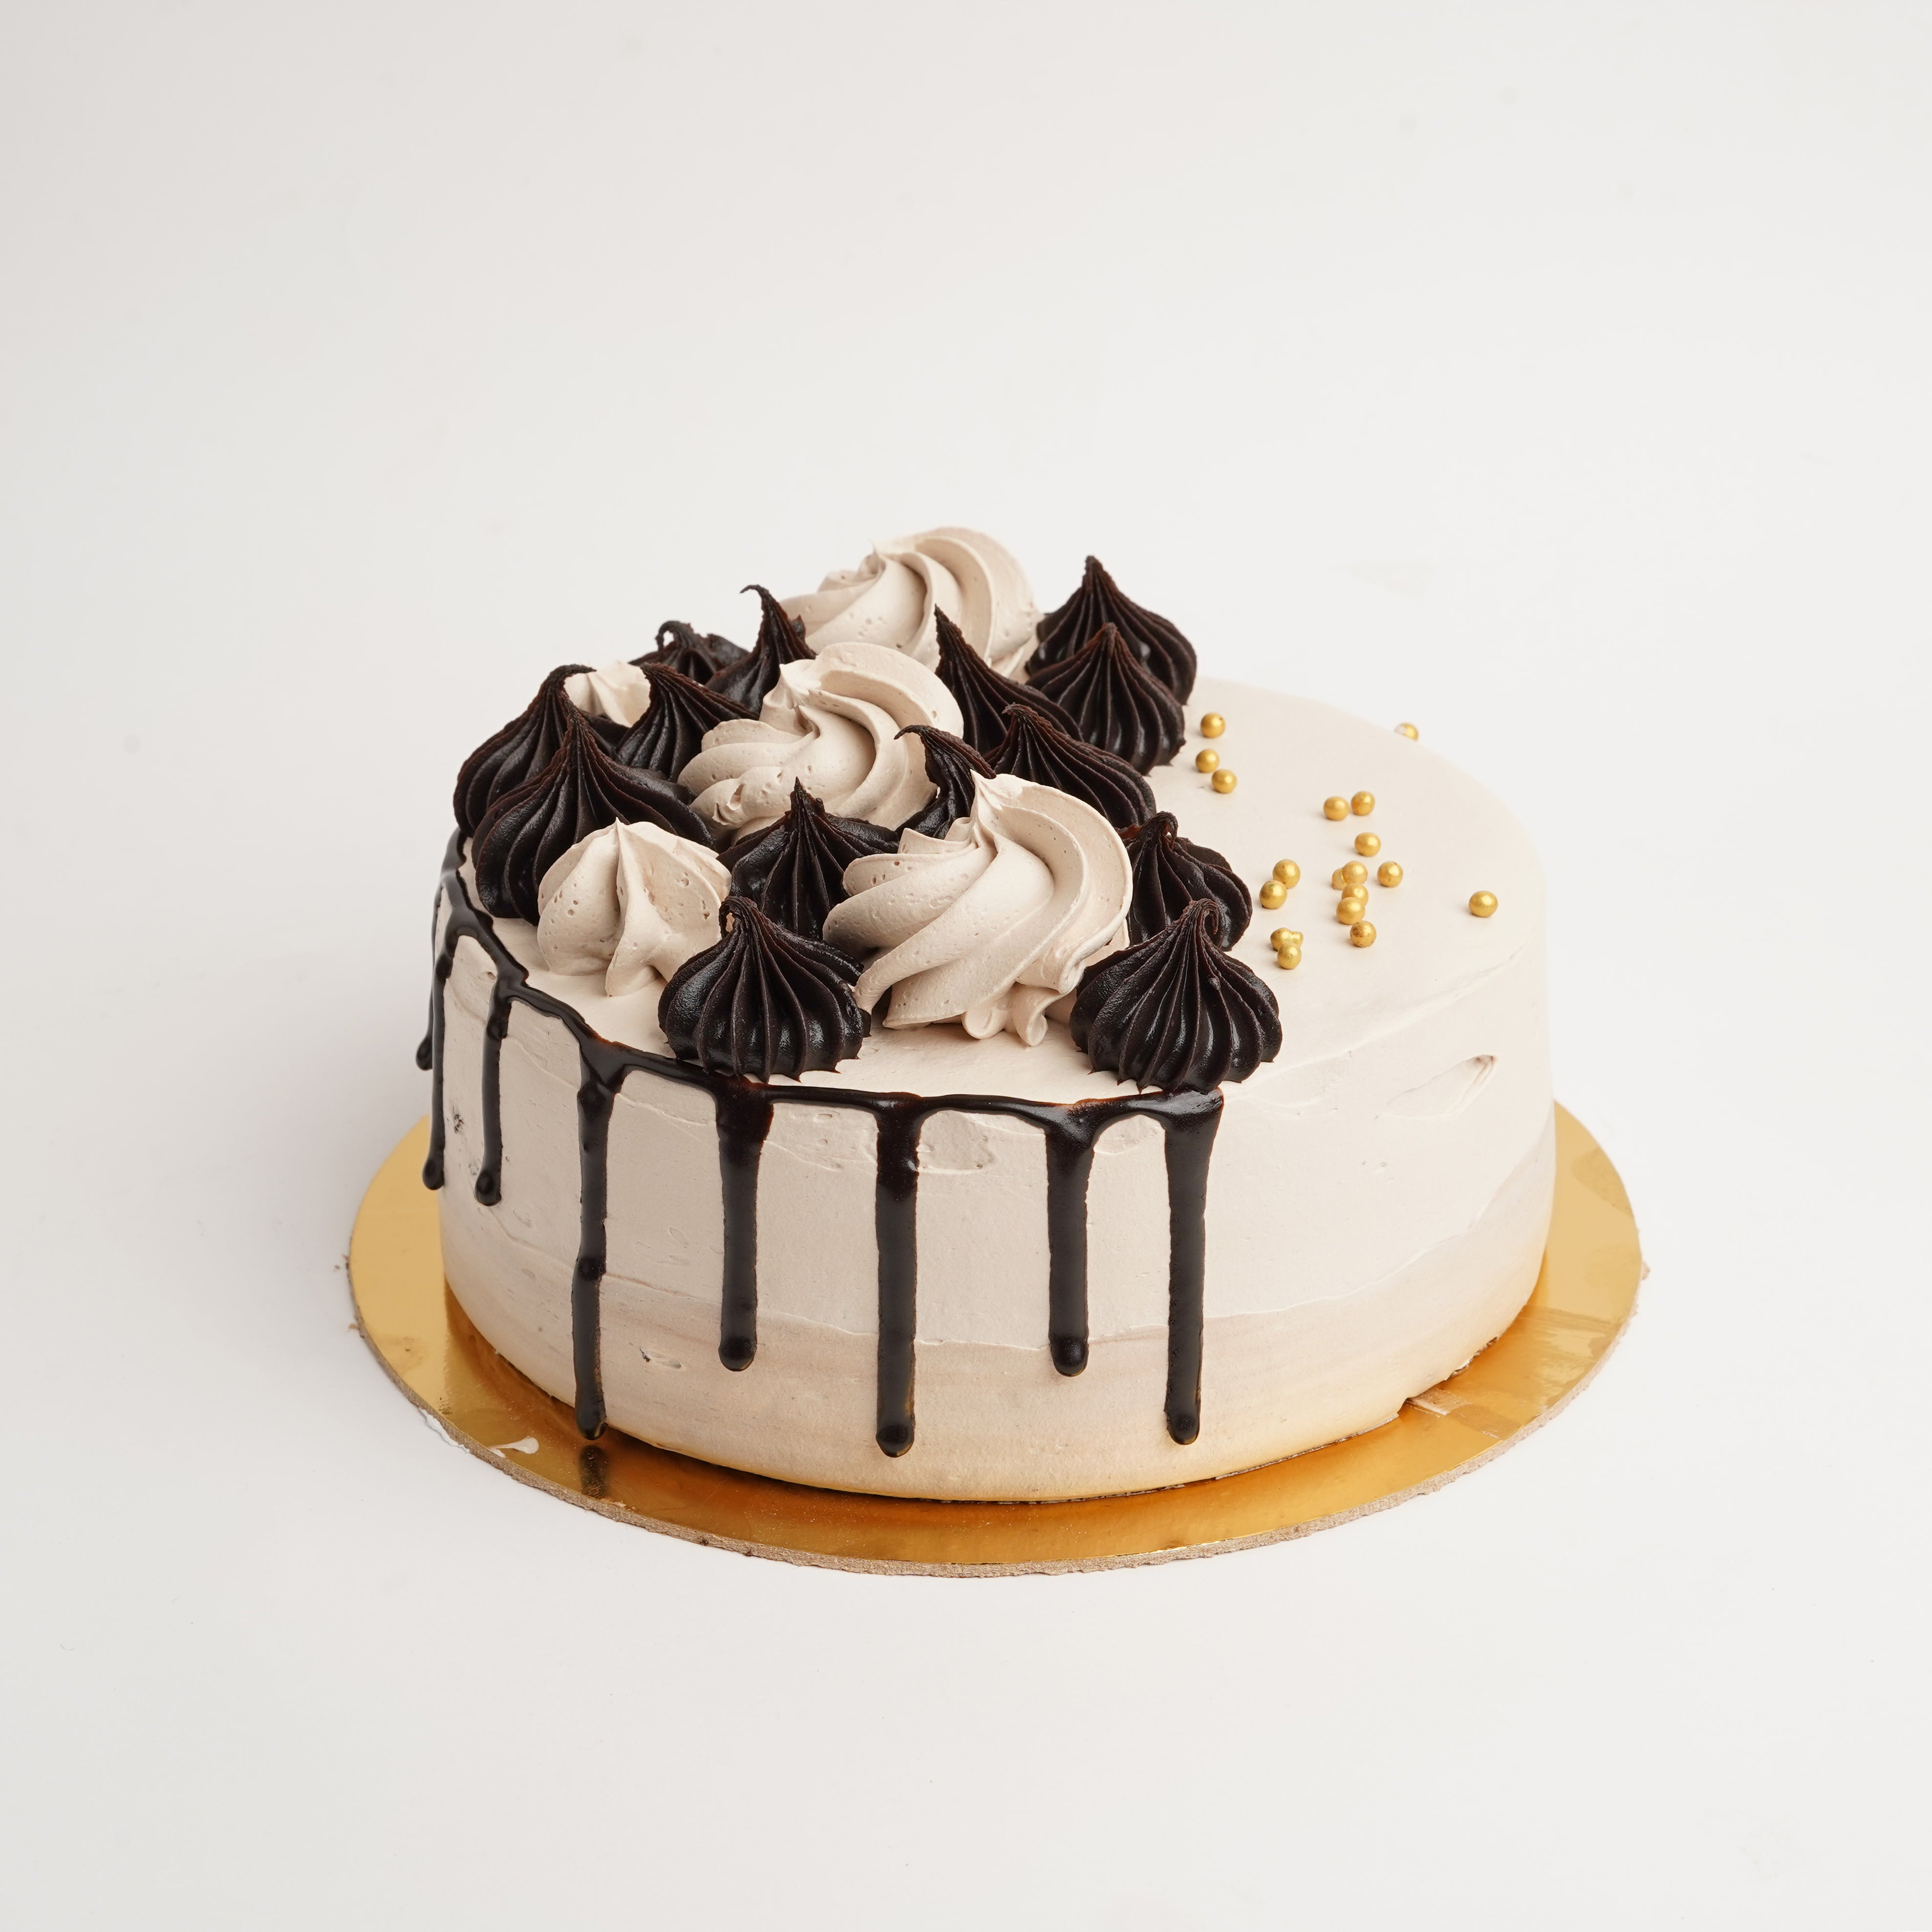 Loaded Chocolate Cake – A Cake Creation